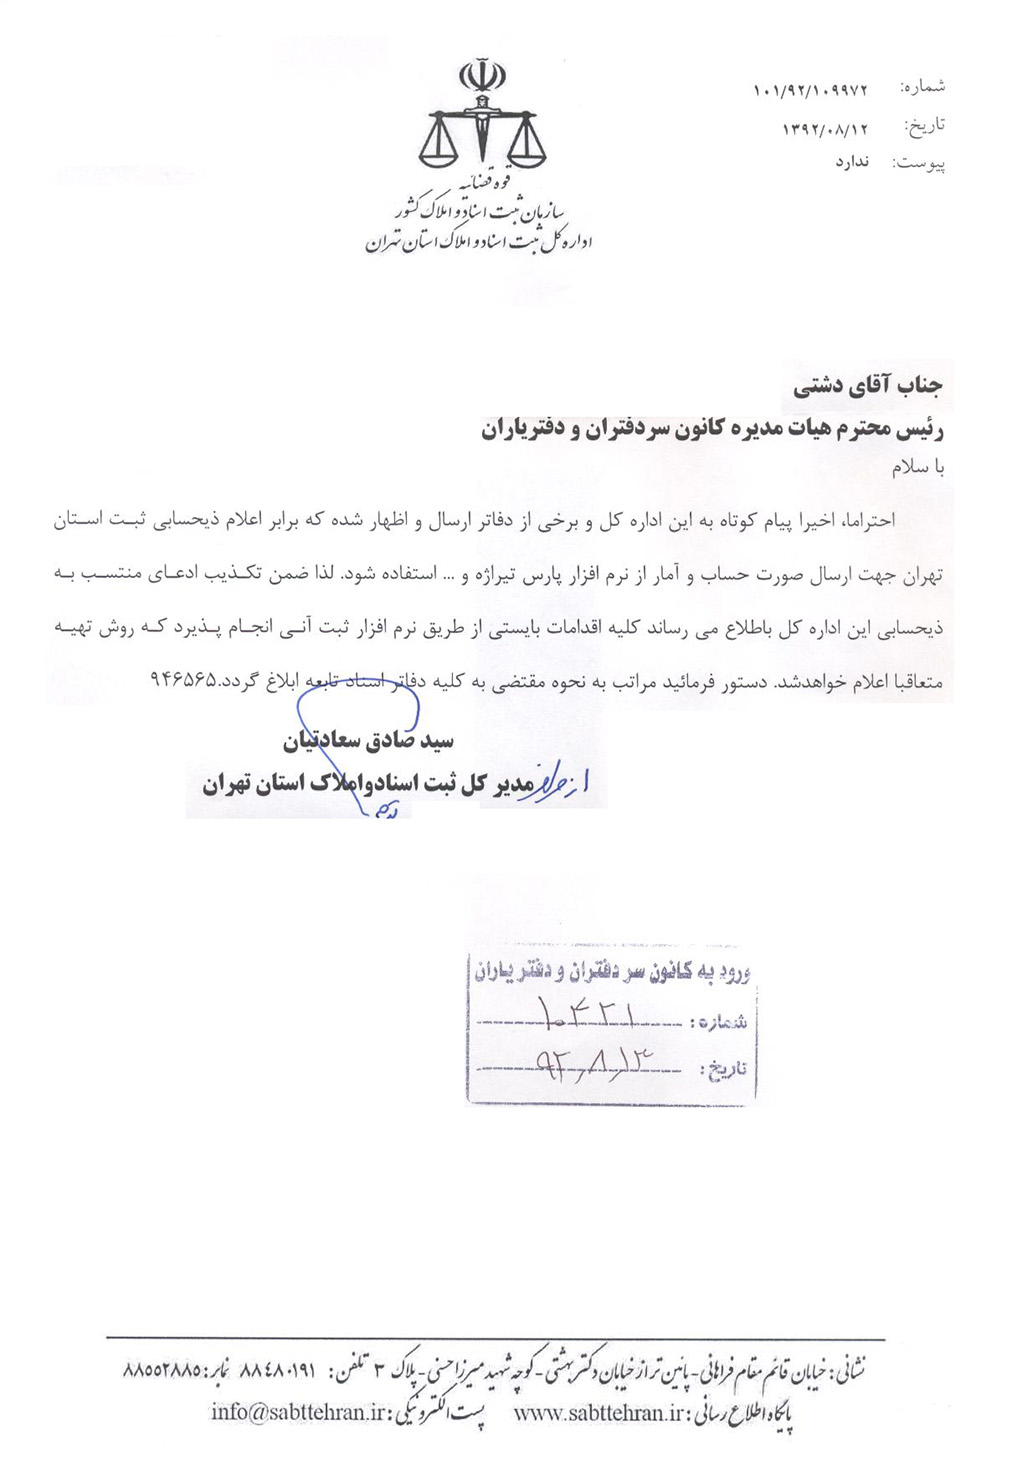 نامه مدیر کل ثبت استان تهران در خصوص تکذیب موارد منتسب شده به ذیحسابی